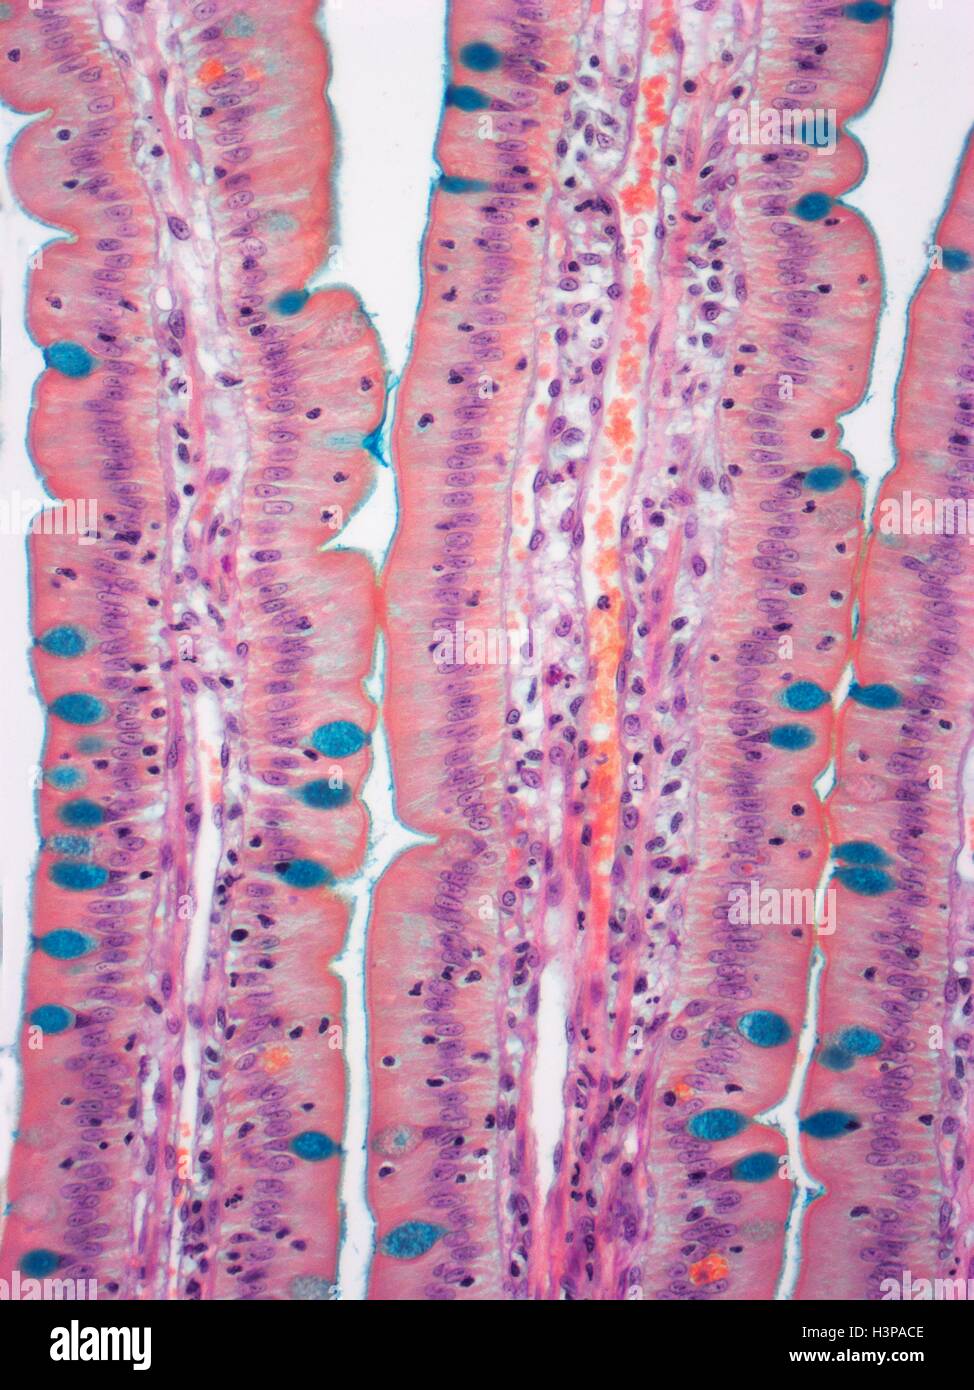 Il piccolo intestino. Micrografia di luce (LM) di una sezione attraverso le dita (villi) del duodeno, la parte più alta del piccolo intestino. Questi aumentano la superficie di assorbimento del cibo. Nell'epitelio colonnare della superficie esterna (rosa) sono cellule caliciformi (colorato in blu con colorazione speciale), che secernono muco per lubrificare il cibo e prevenire l'auto-digestione. La lamina propria (nucleo centrale, ) contiene il rifornimento di sangue che trasporta i prodotti della digestione. Ingrandimento: x350 quando stampata a 10 cm di larghezza. Foto Stock